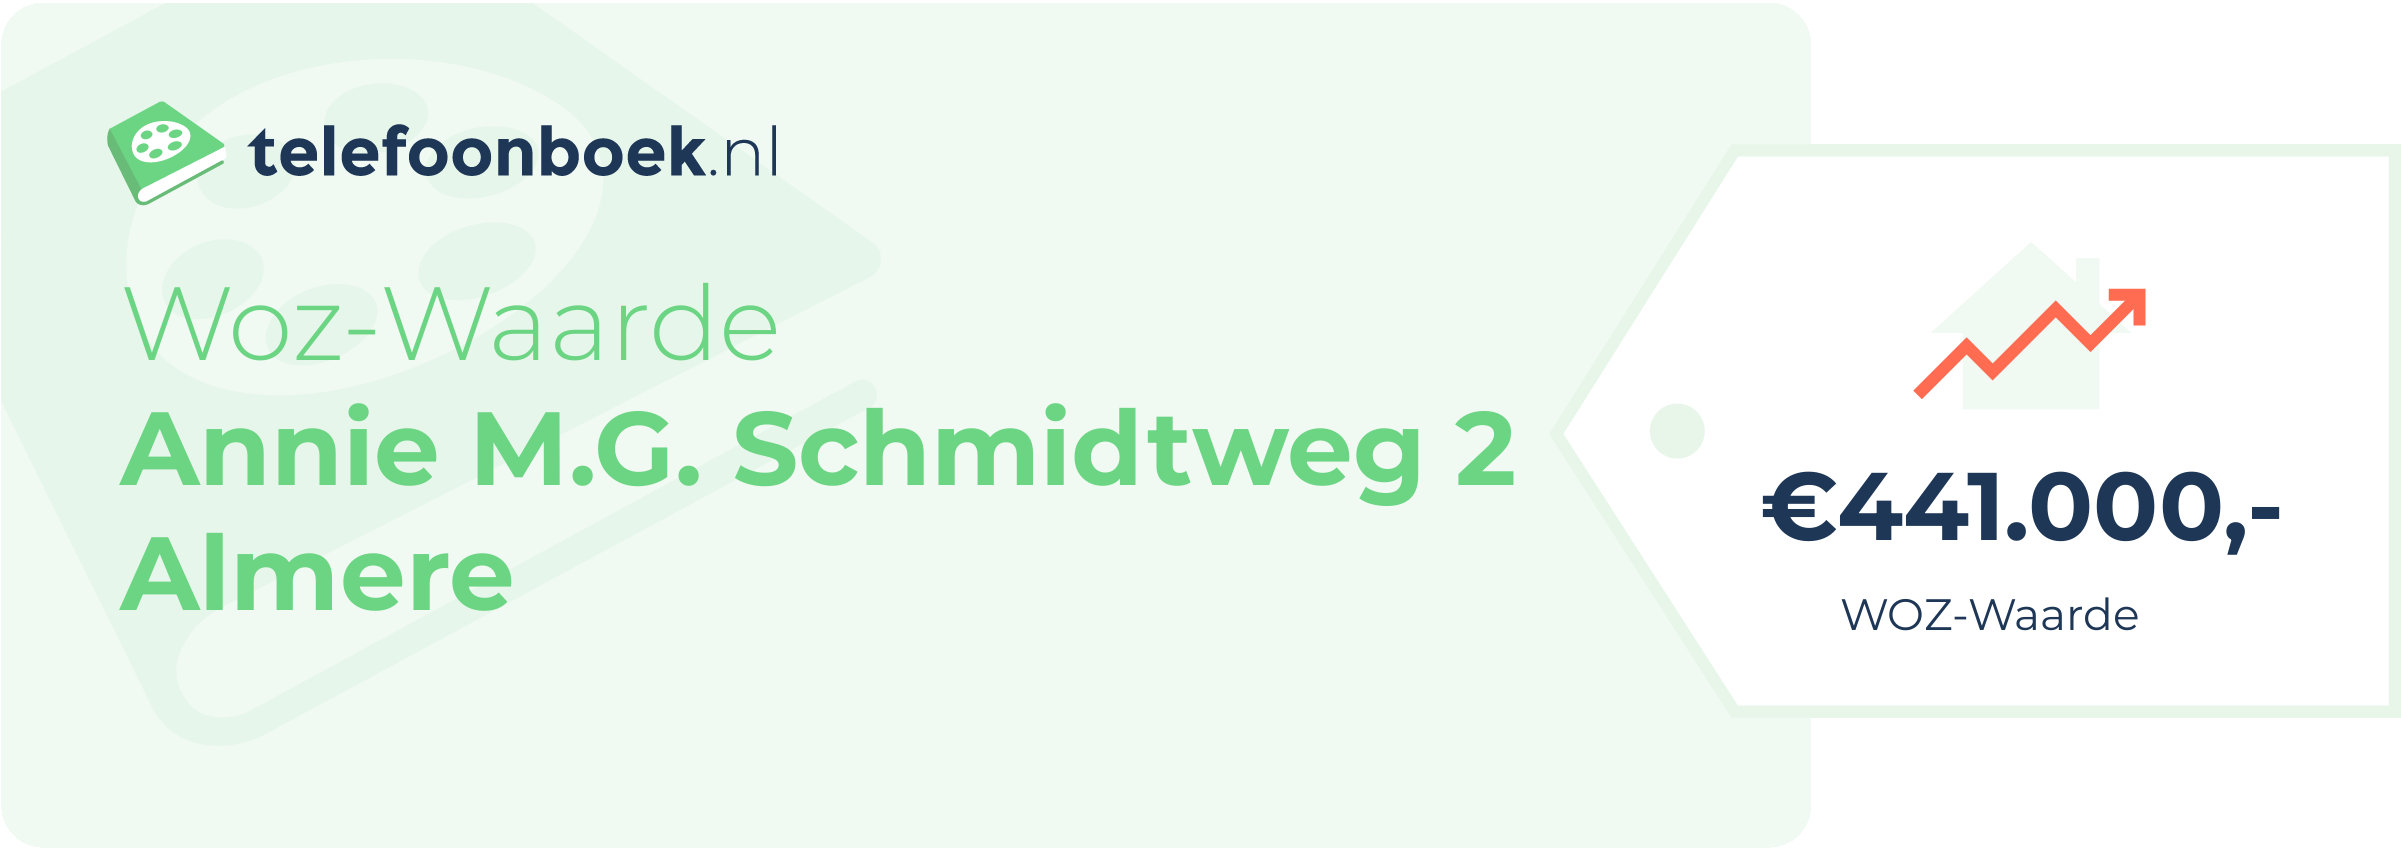 WOZ-waarde Annie M.G. Schmidtweg 2 Almere